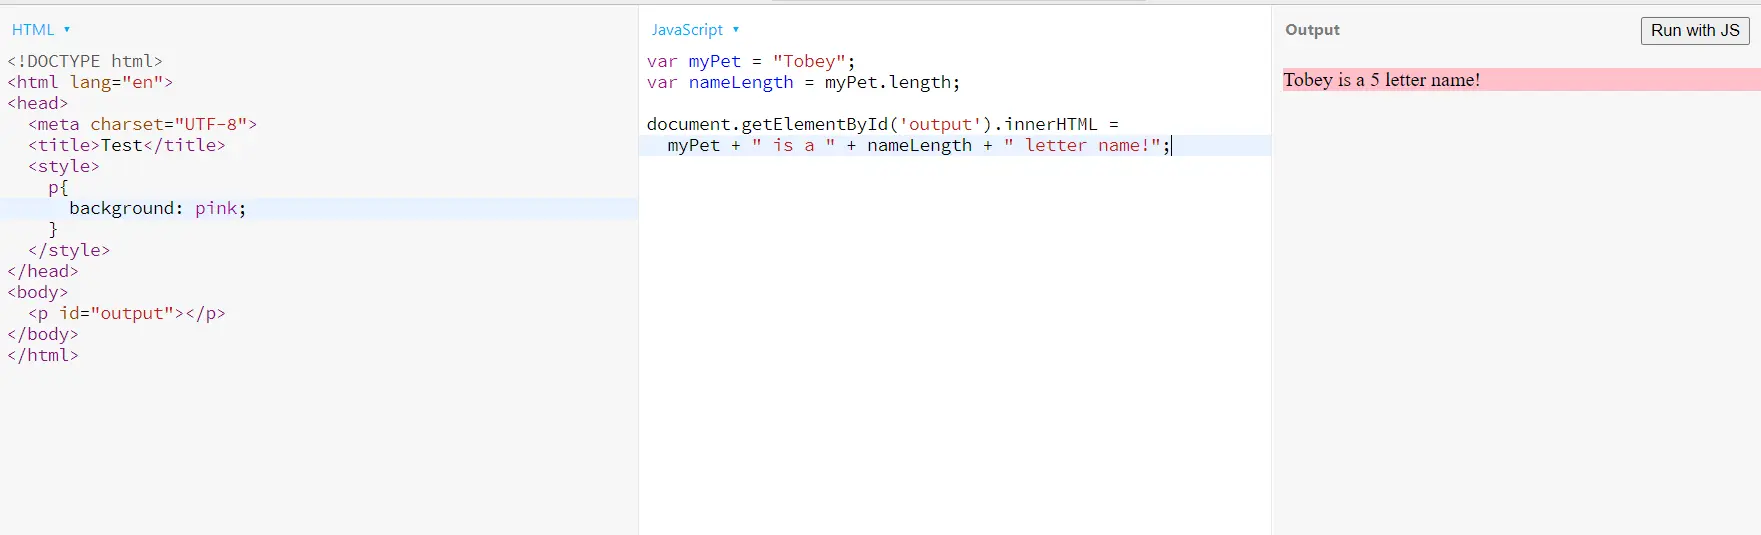 使用者在 html 中定義的 js 變數